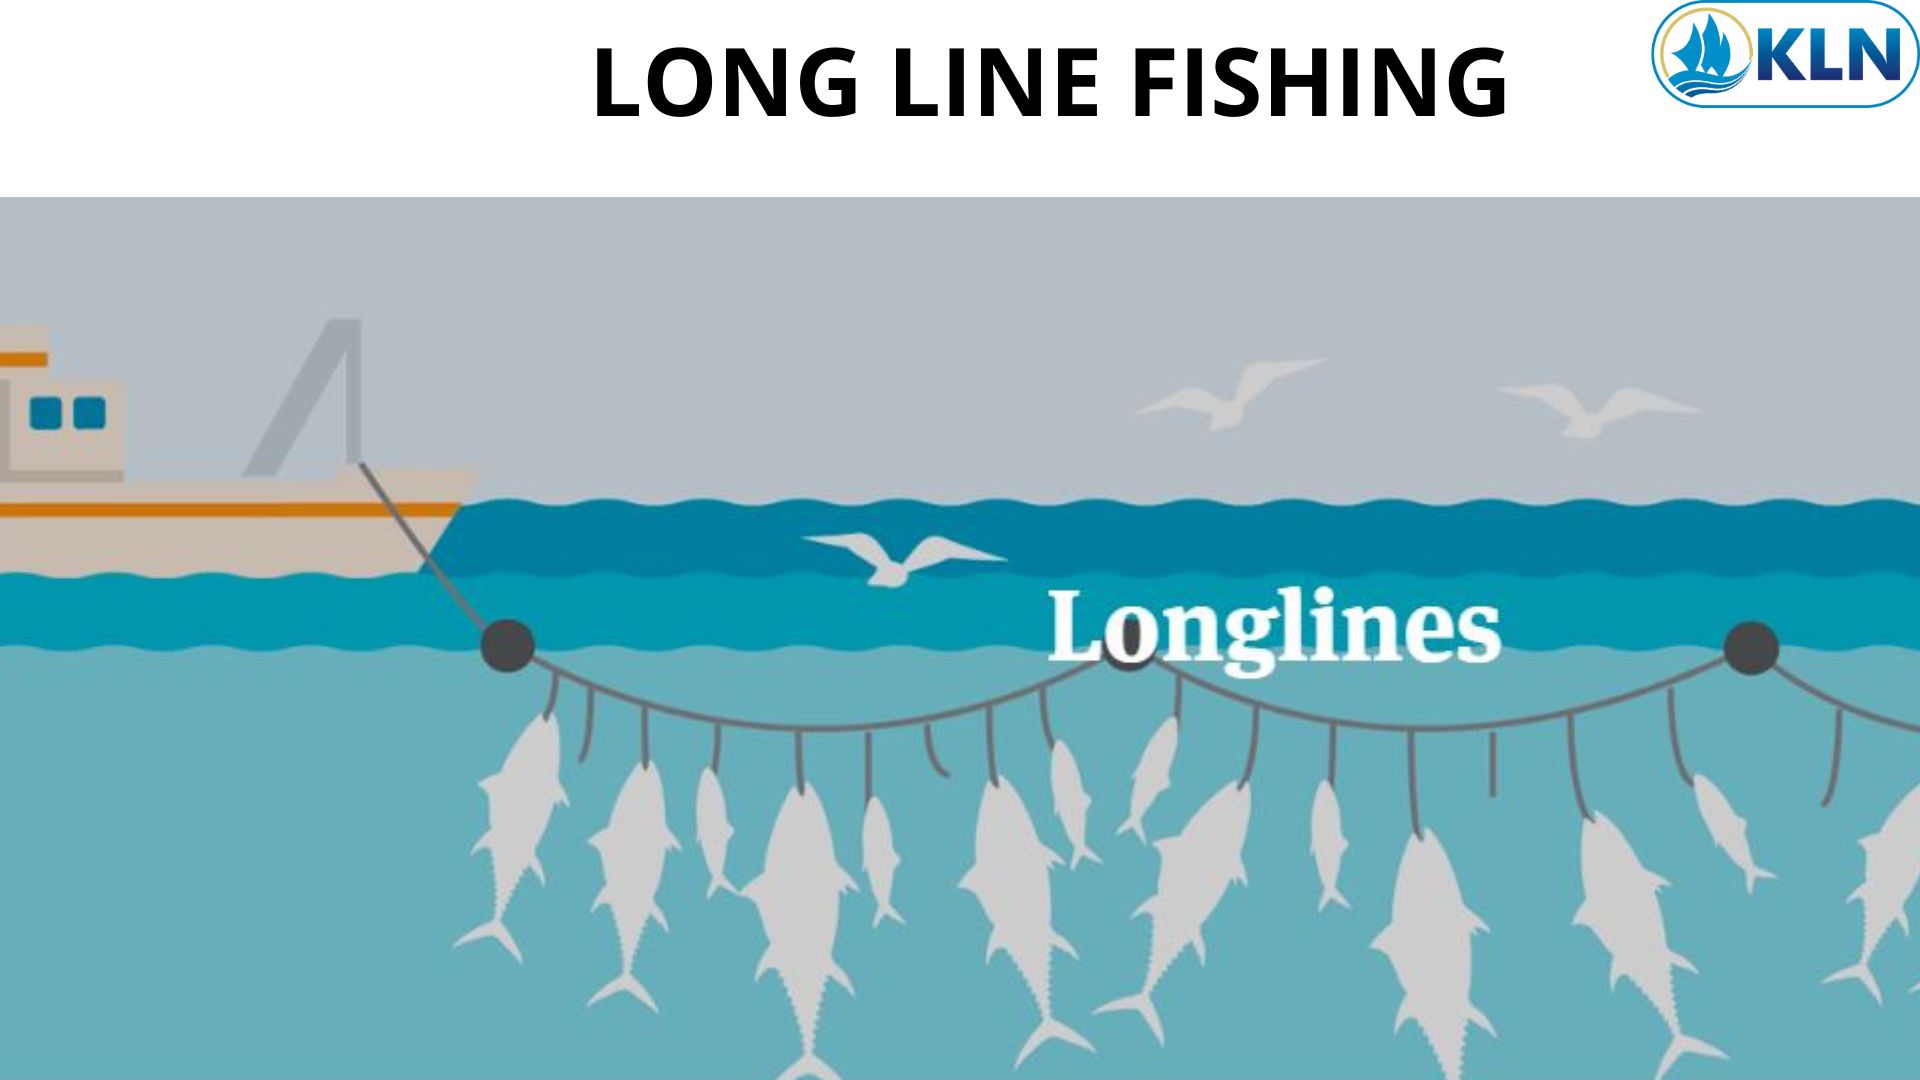 LONG LINE FISHING